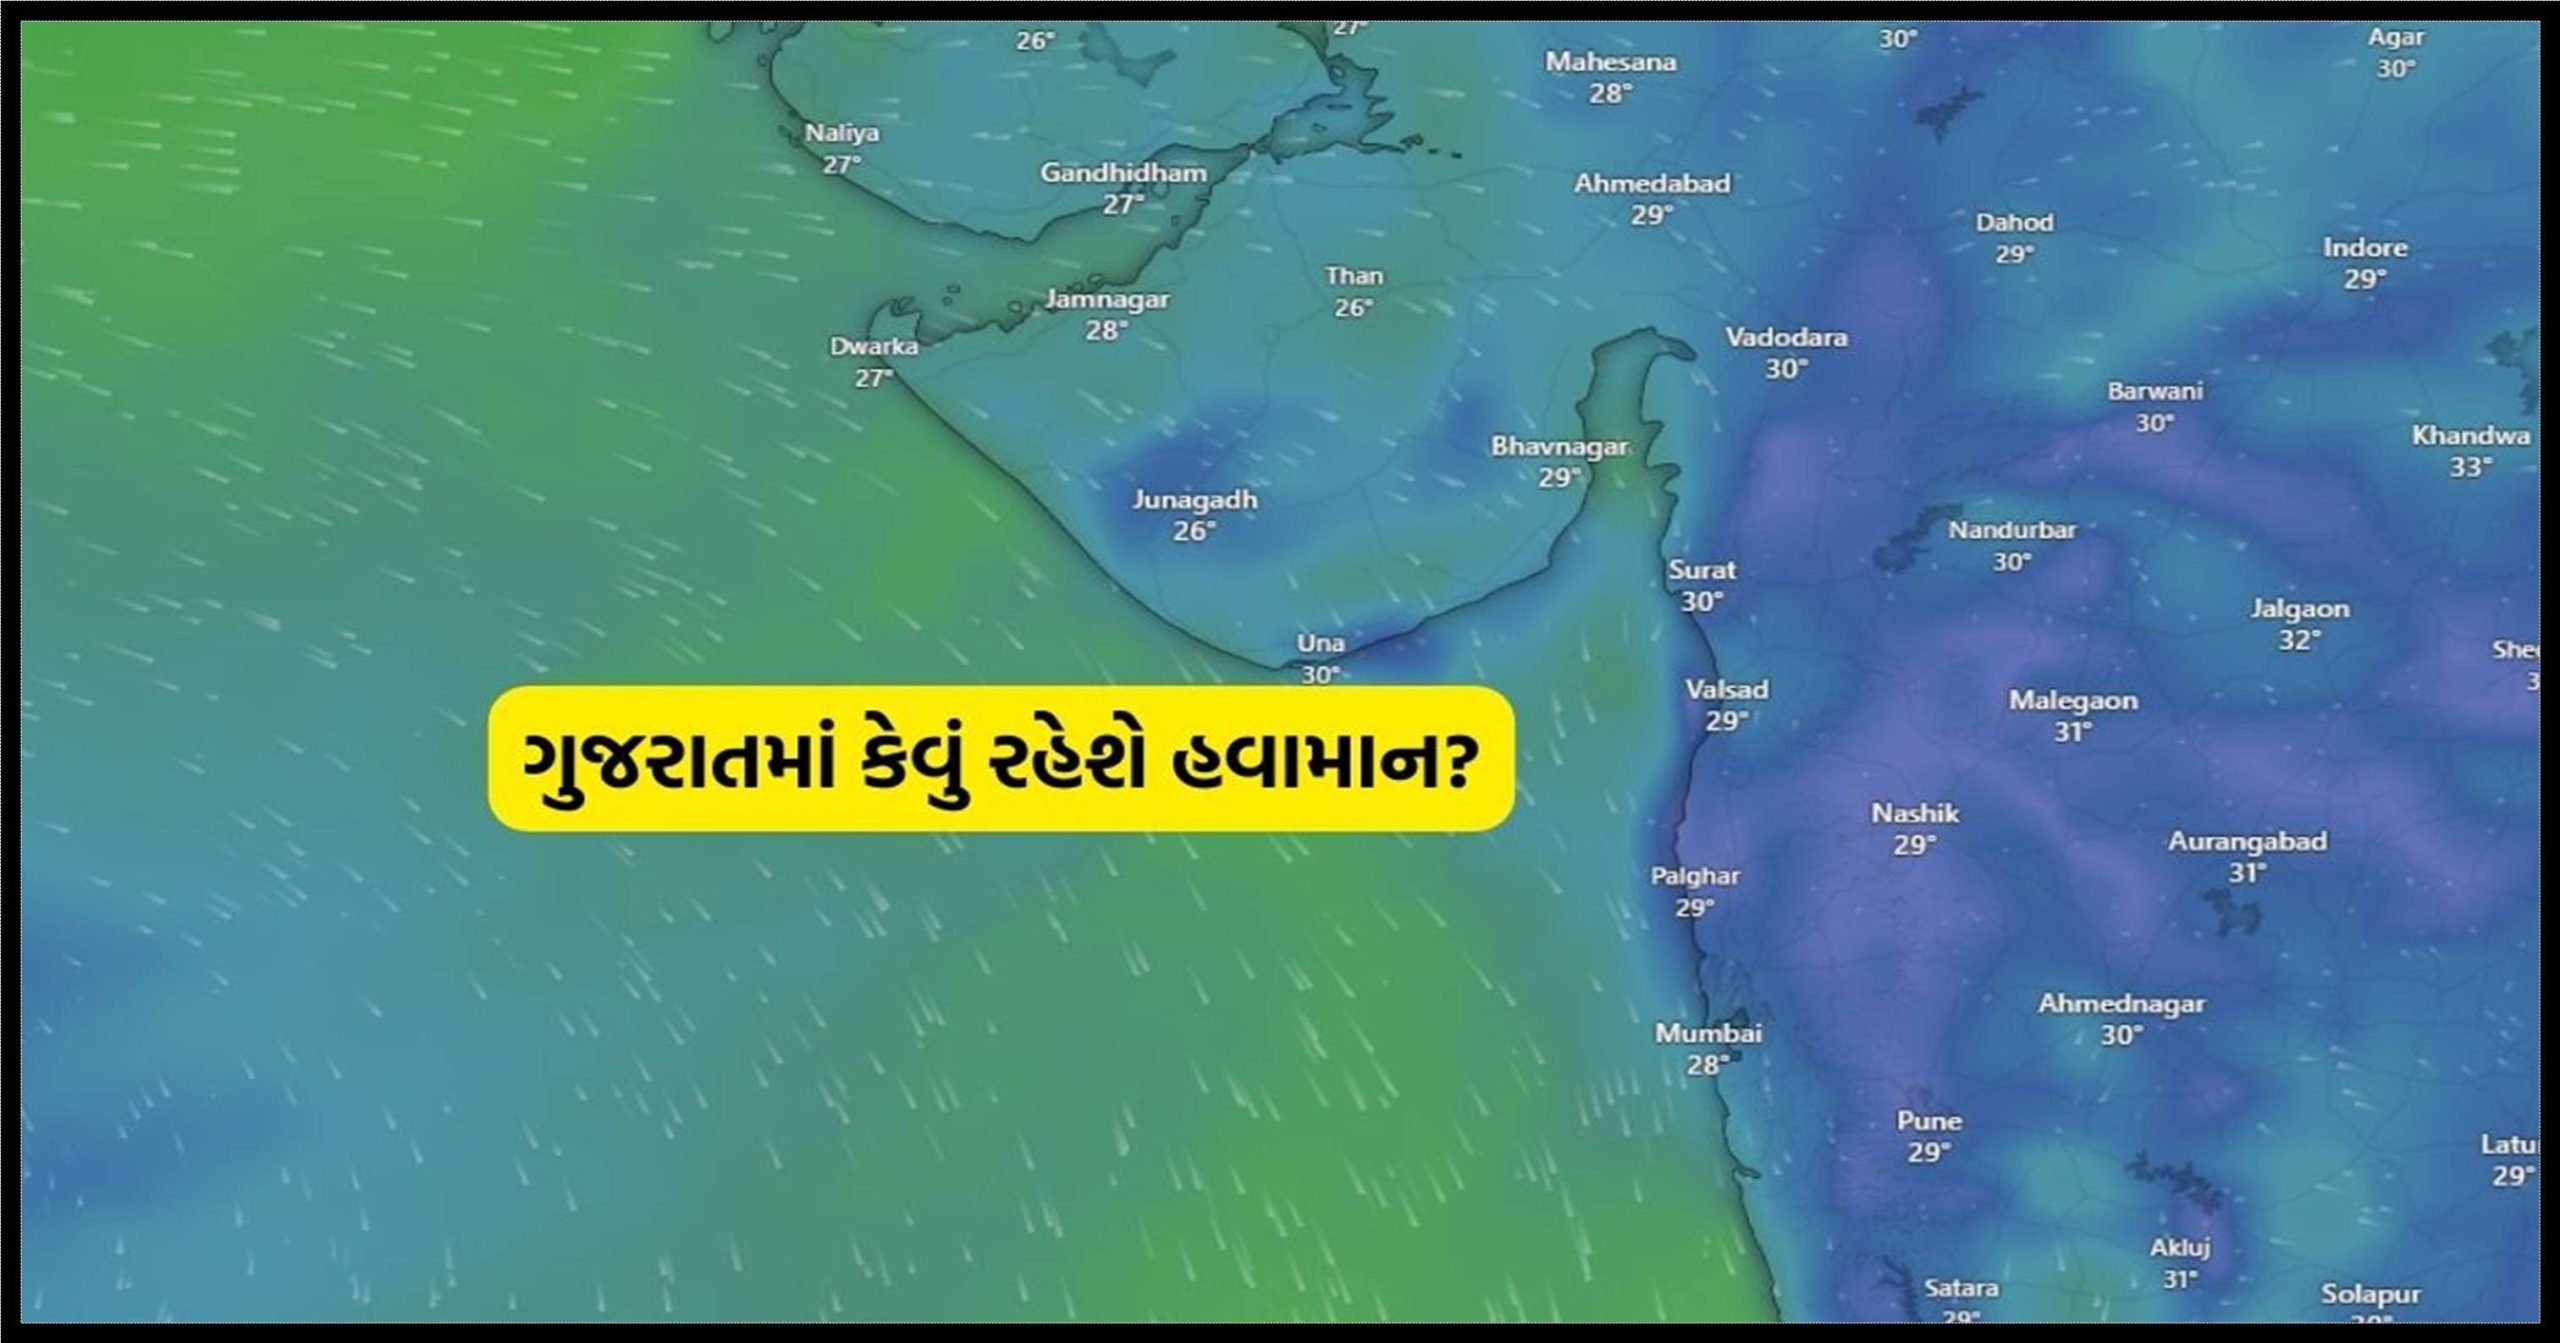 ભારે કરી..! ચૂંટણીના માહોલ વચ્ચે ગુજરાતમાં આગામી પાંચ દિવસ વરસાદને લઈને કરાય મોટી આગાહી, જાણો વરસાદ પડશે કે નહીં?